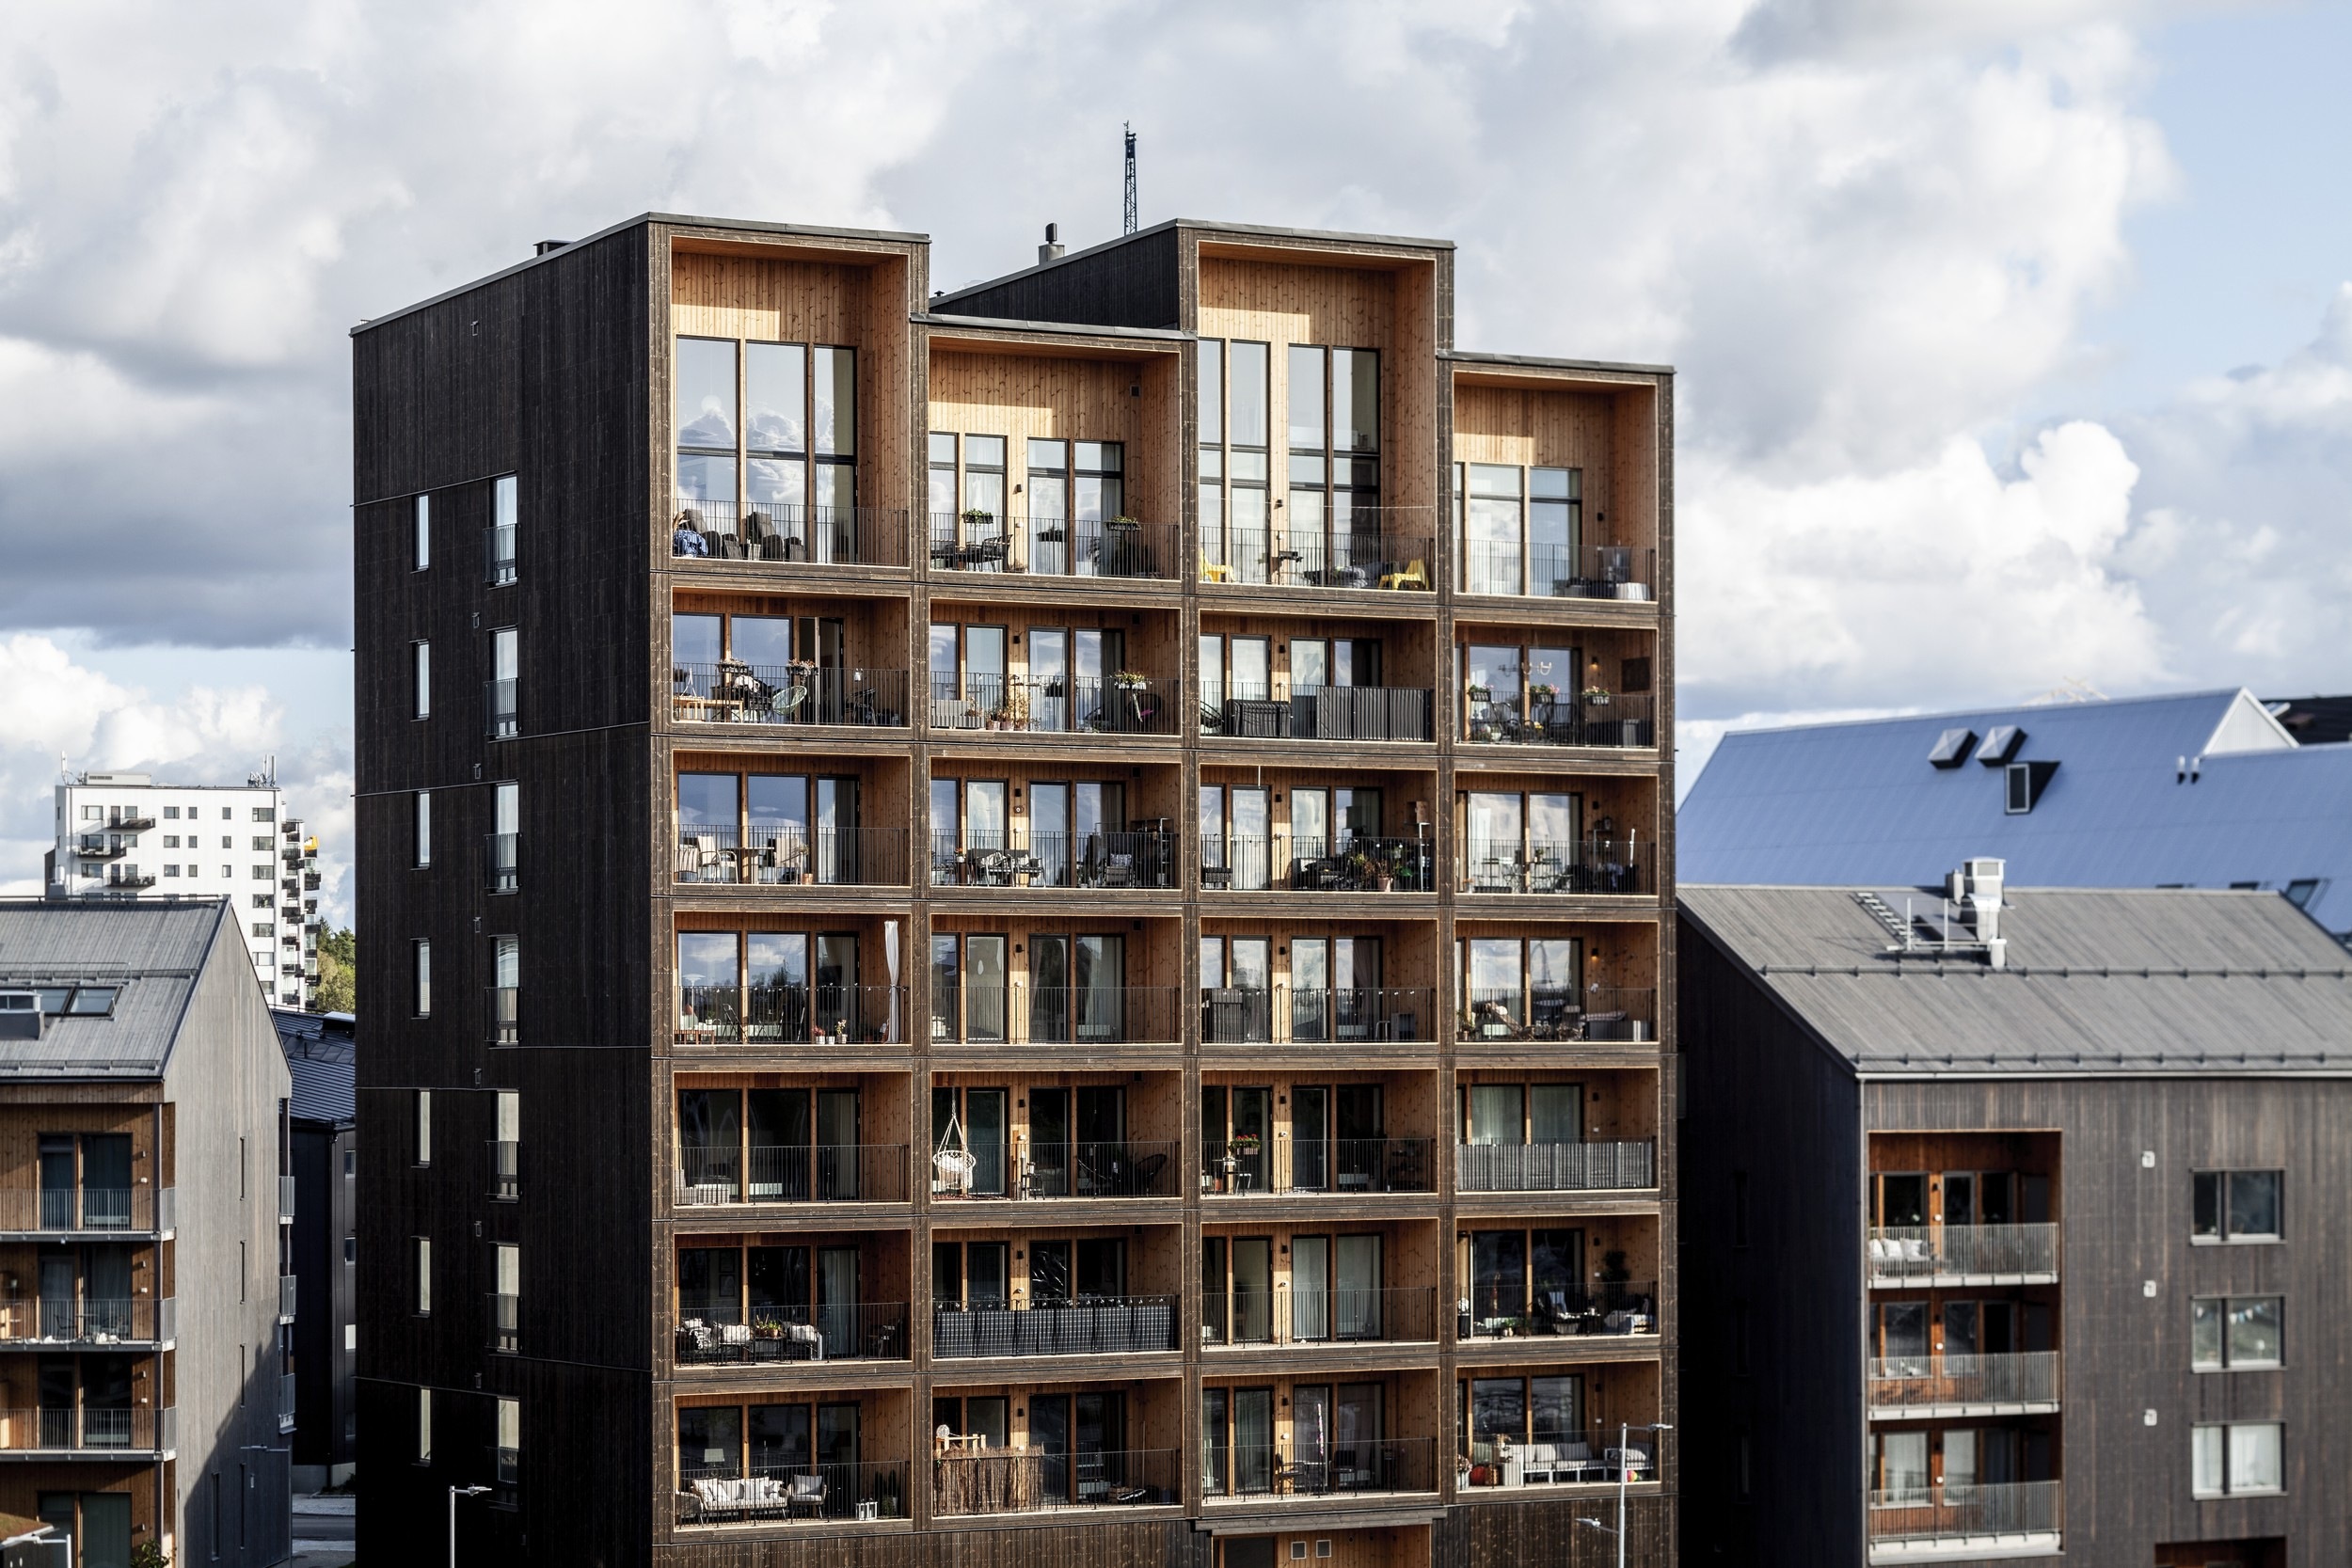 Самое высокое деревянное здание Швеции — жилая башня в 8,5 этажей по проекту C.F. Møller в городе Вестерос. Башня построена из поперечно-клееной древесины (cross-laminated timber) с небольшим добавлением клееного бруса (glulam)